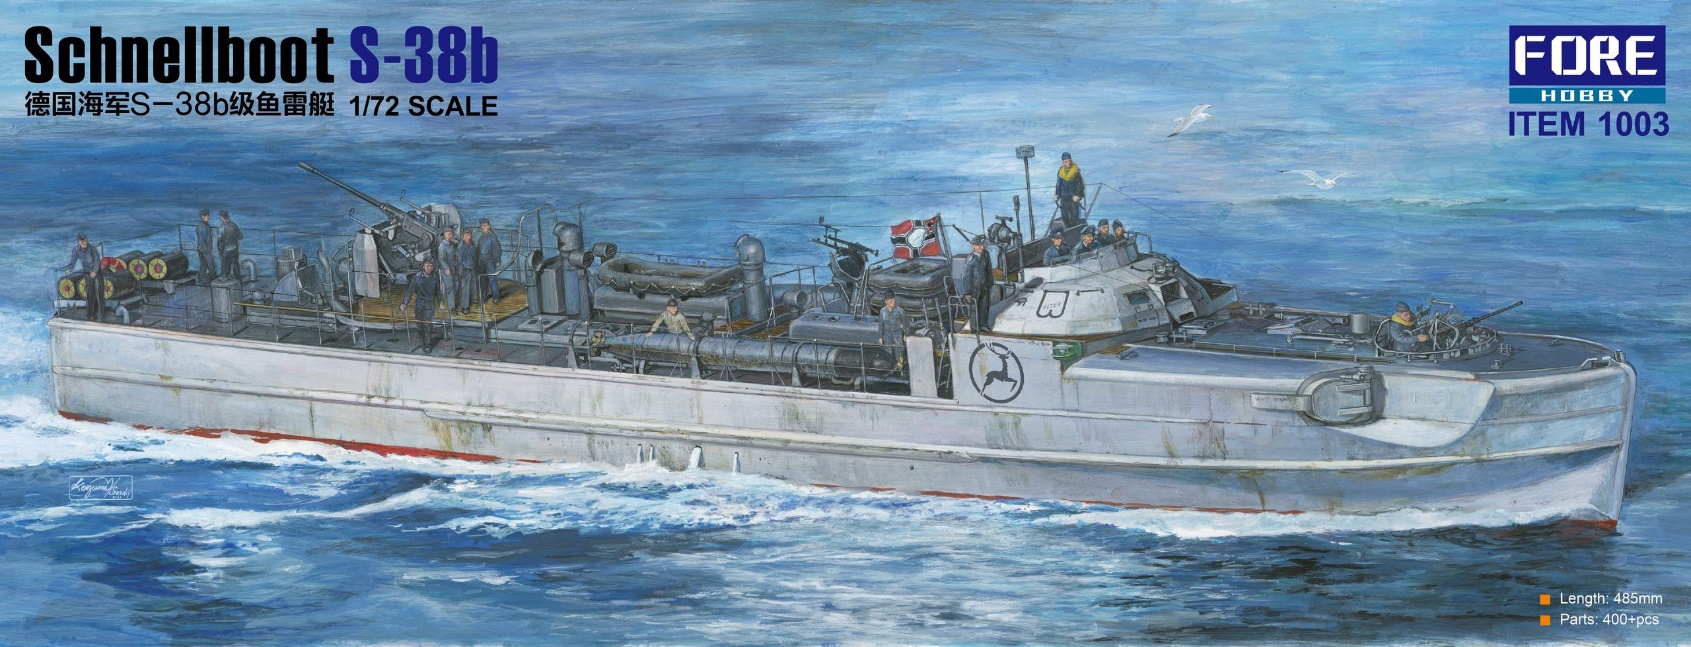 1/72 ドイツ海軍 シュネルボート S-38b型 高速戦闘艇